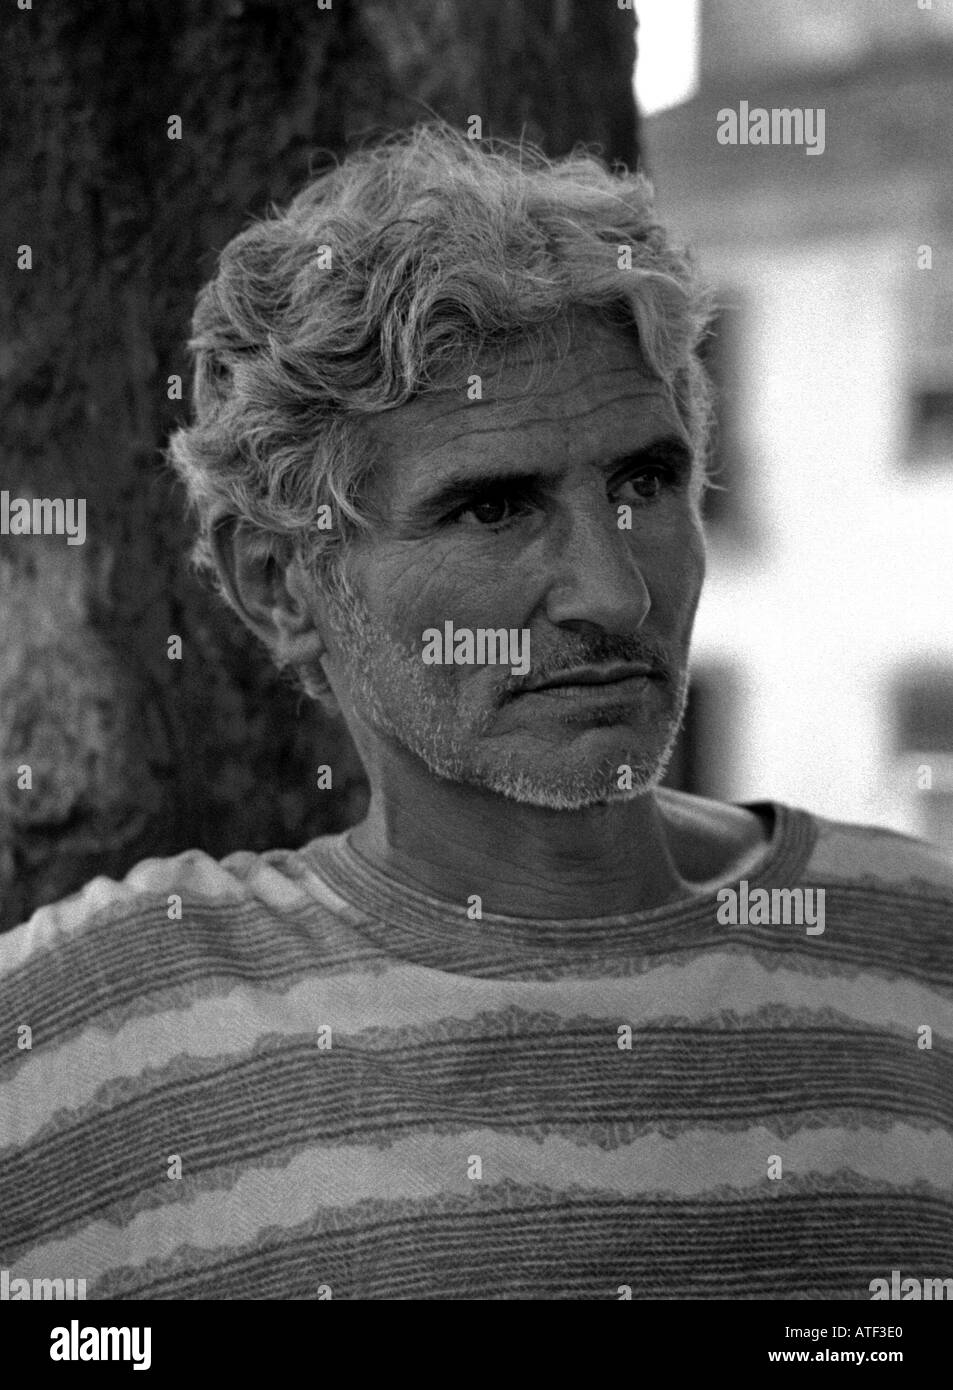 'Street' philosophe & Puissant portrait de intensif homme sénile pensif Paraty Rio de Janeiro Brésil Brasil Amérique Latine du Sud Banque D'Images